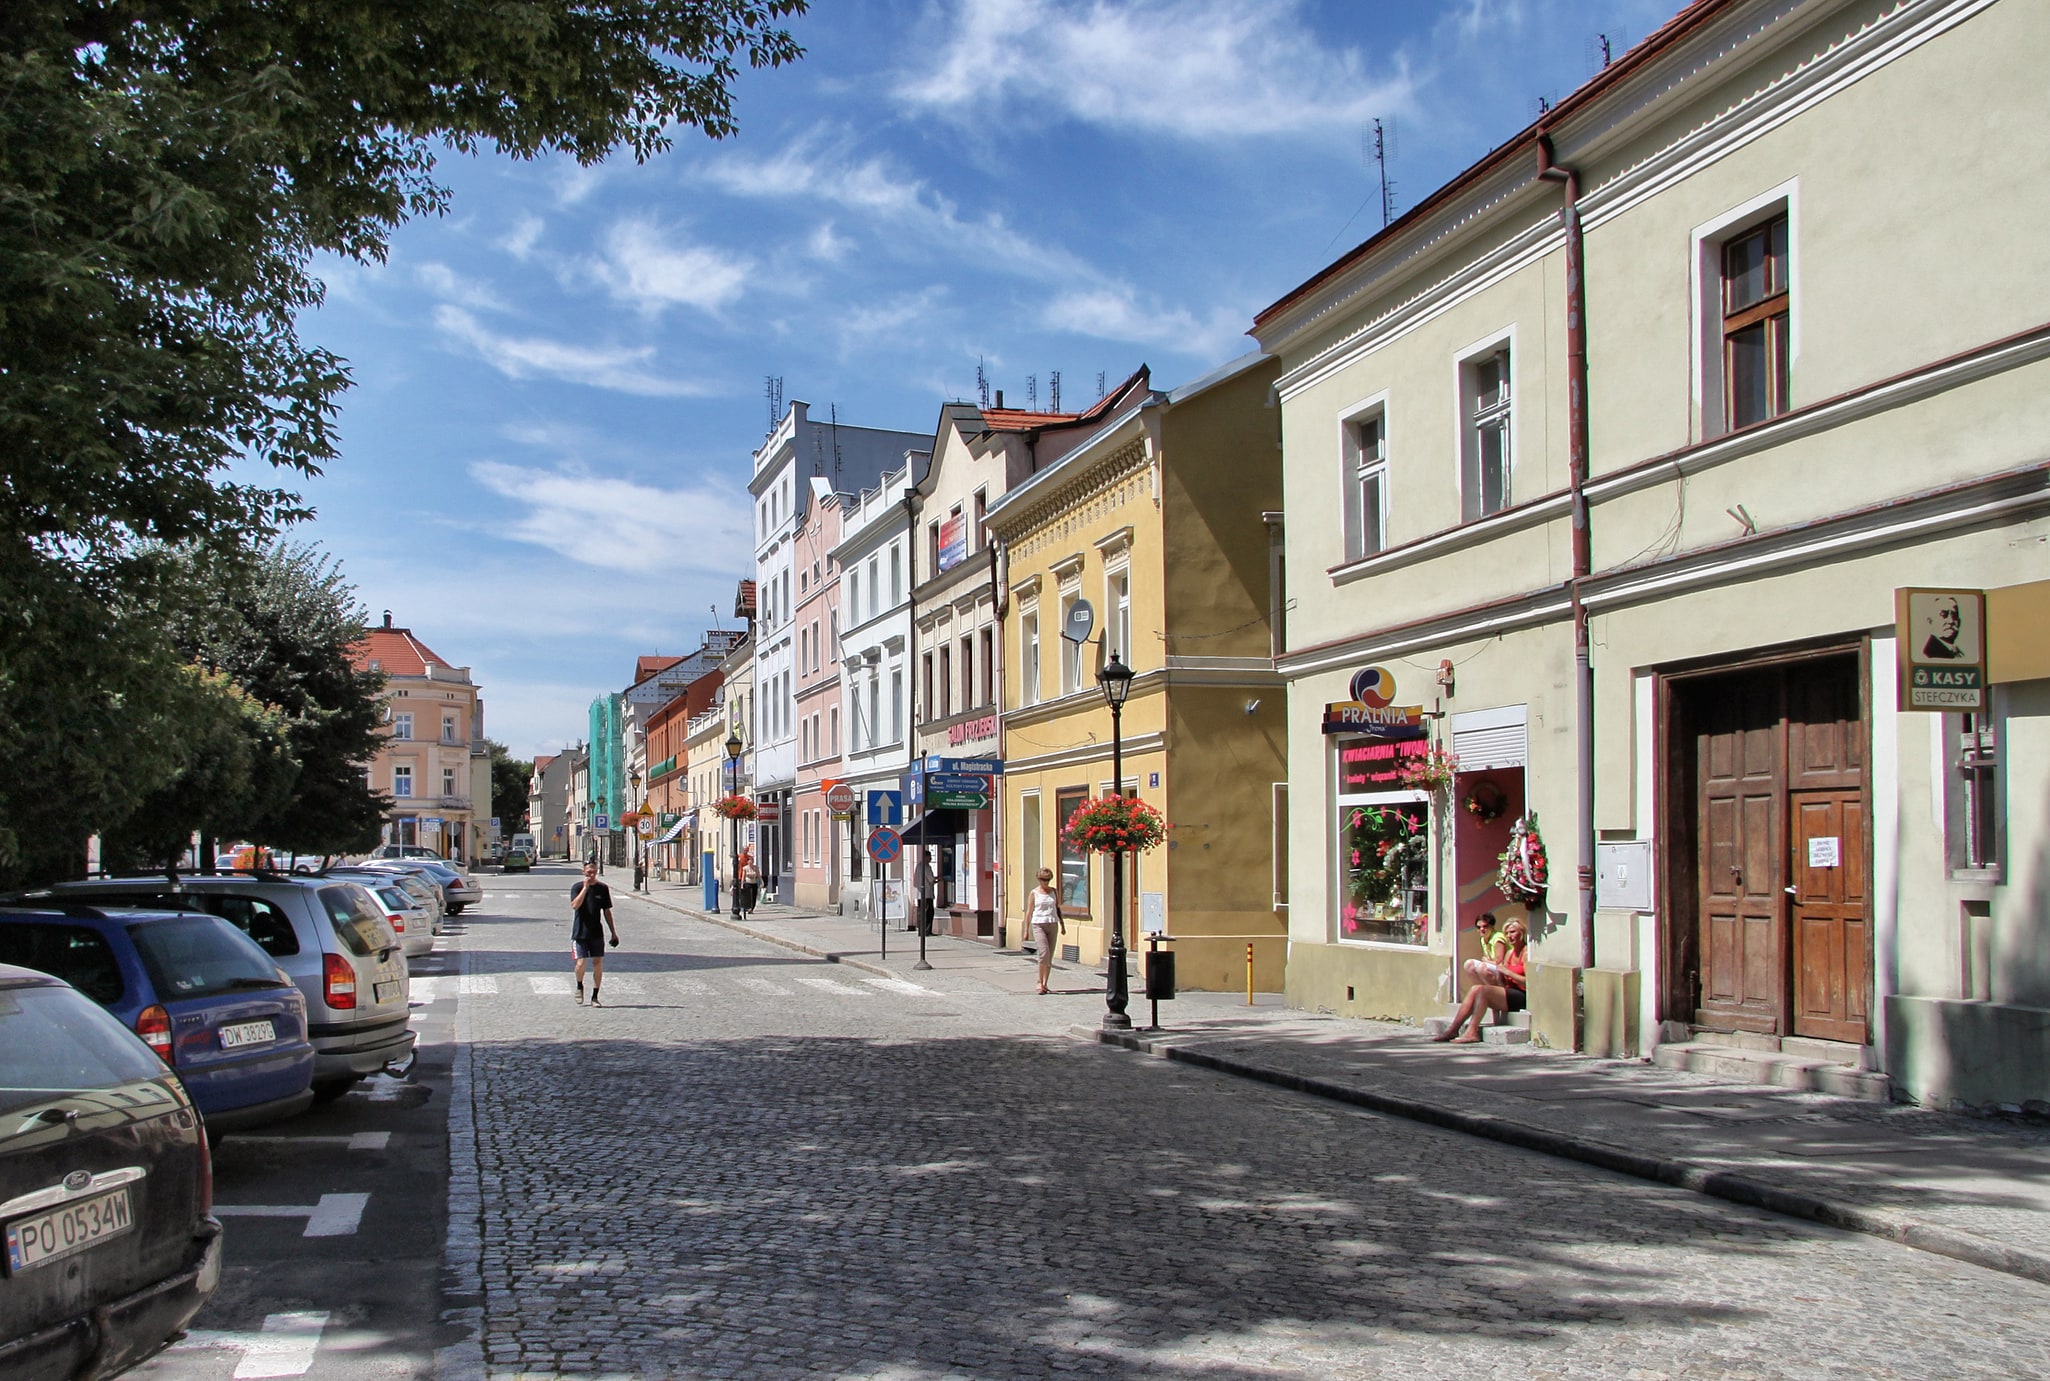 Kąty Wrocławskie, Poland